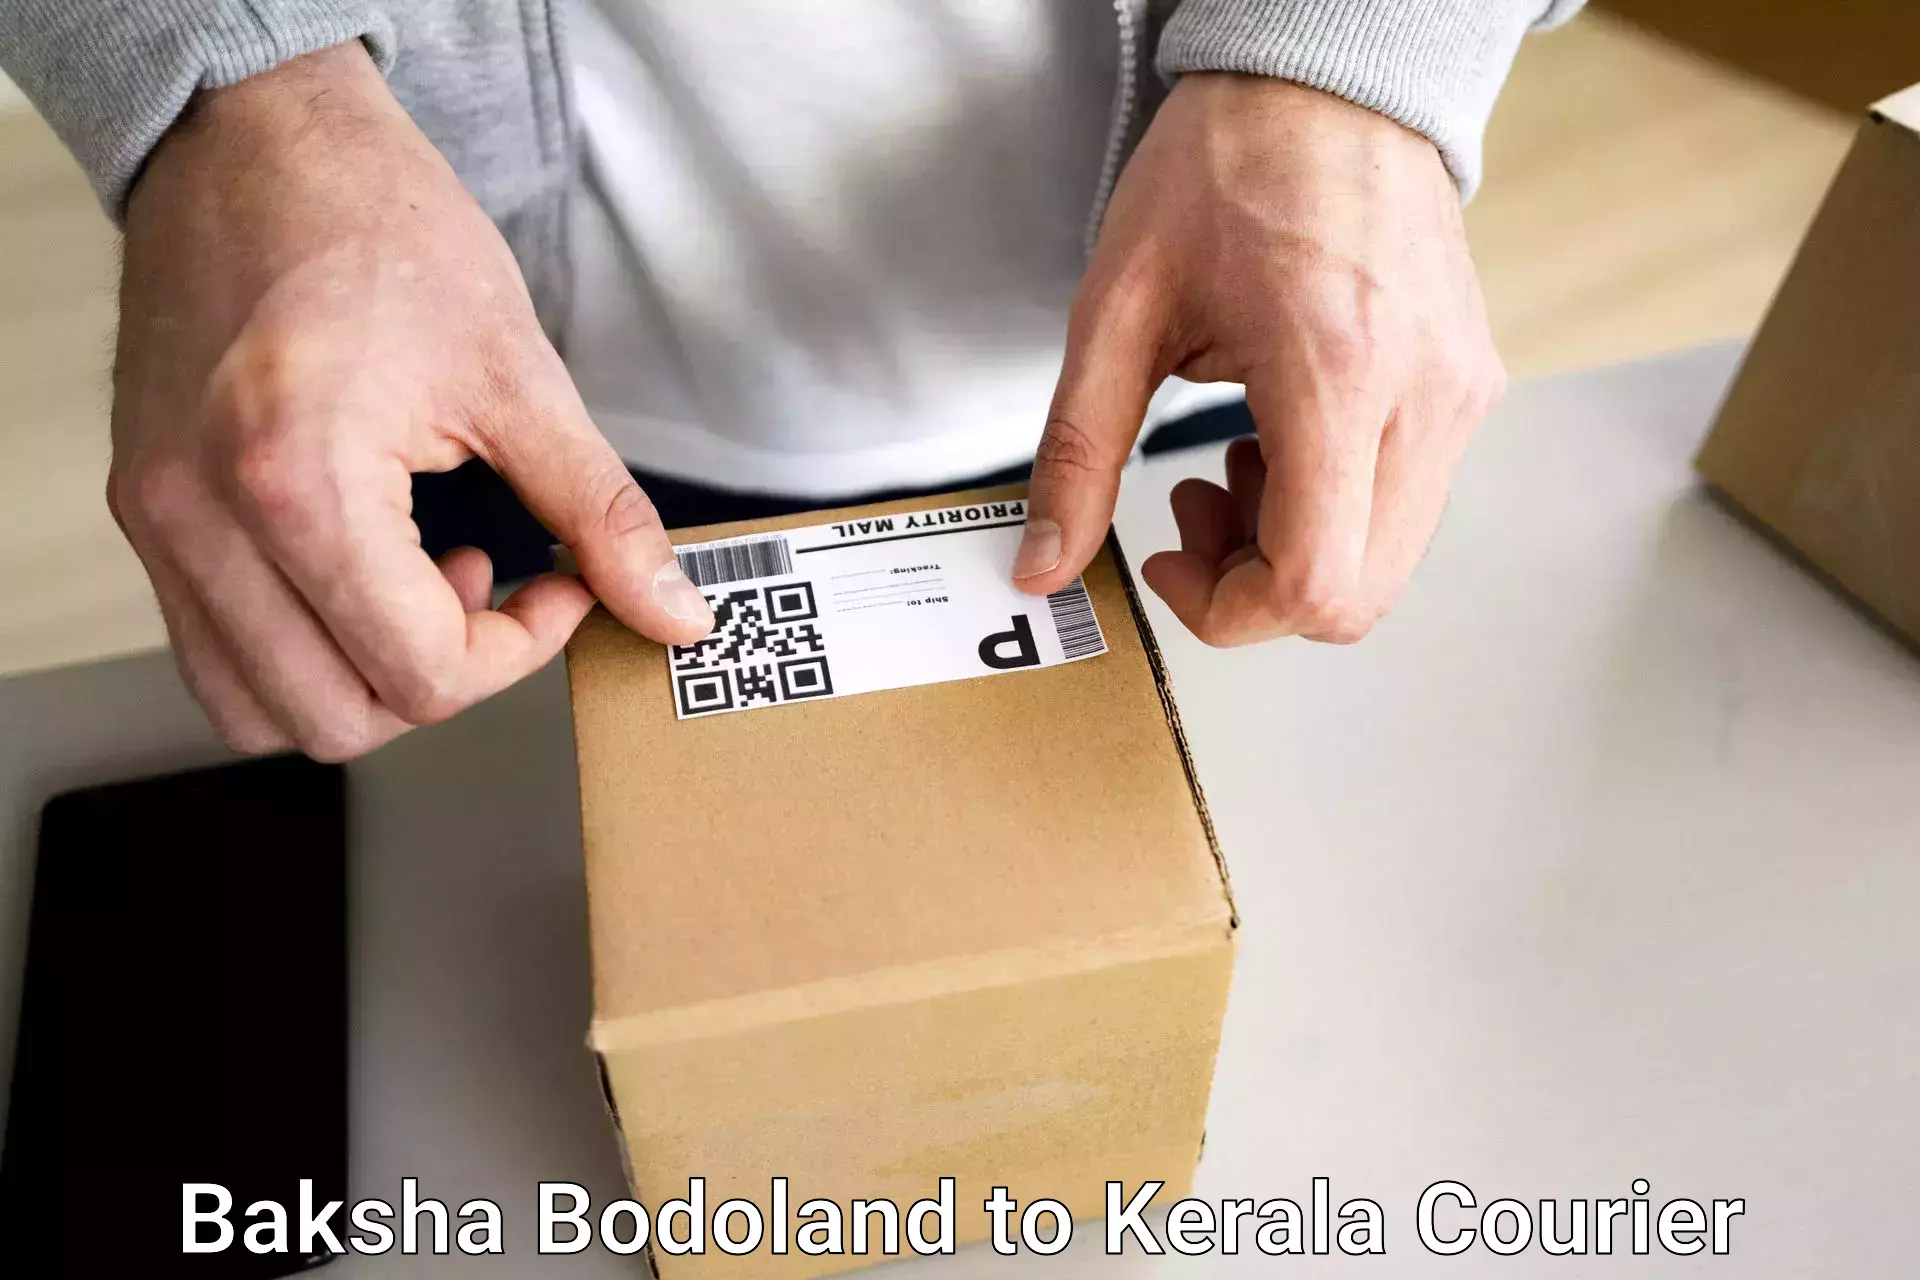 Luggage delivery system Baksha Bodoland to IIT Palakkad